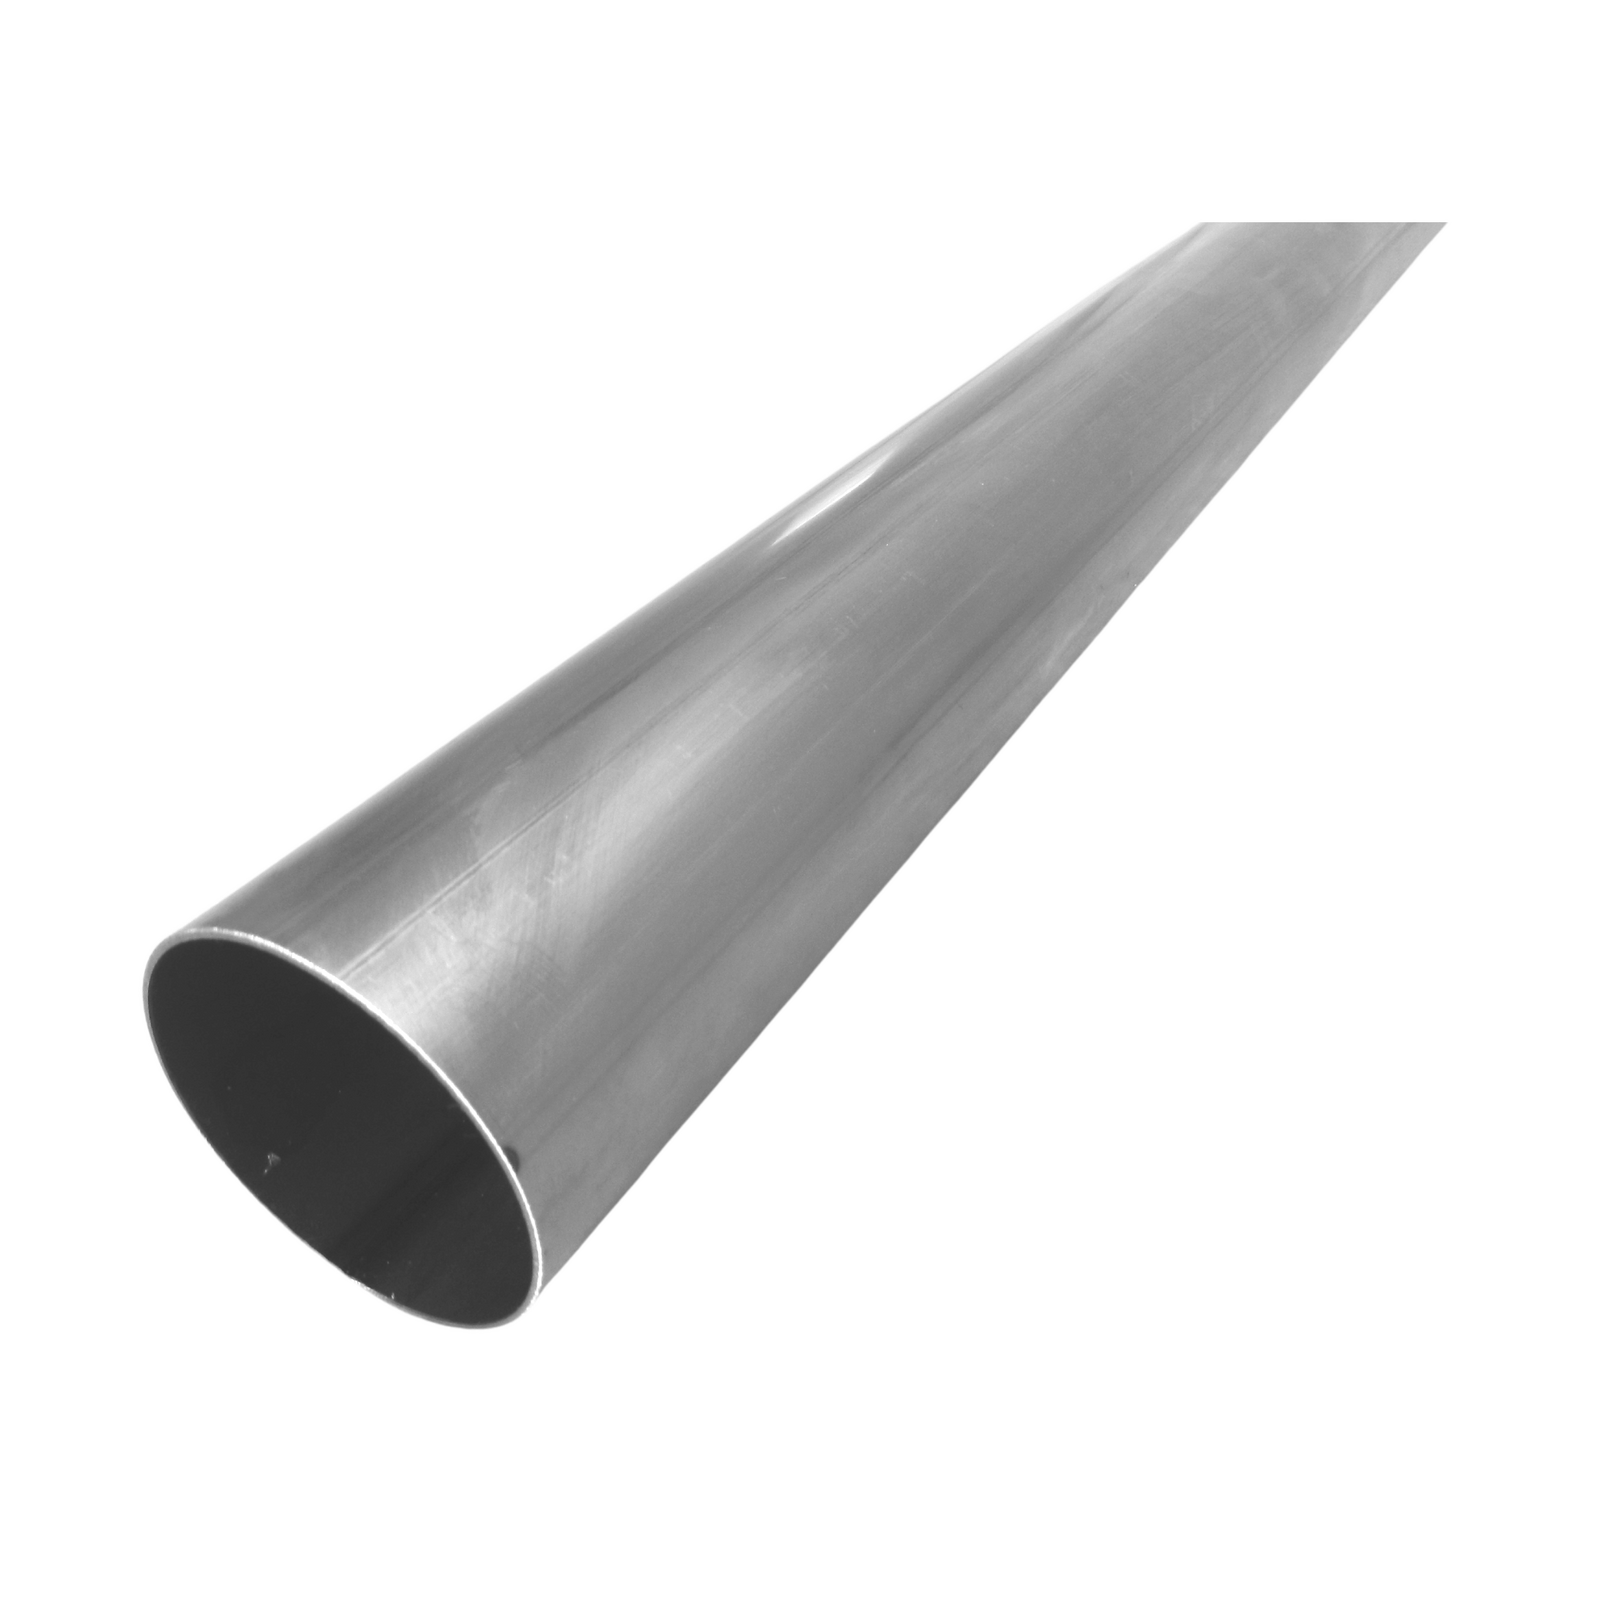 Round Tube - 34mm x 1.6mm - Mild Steel